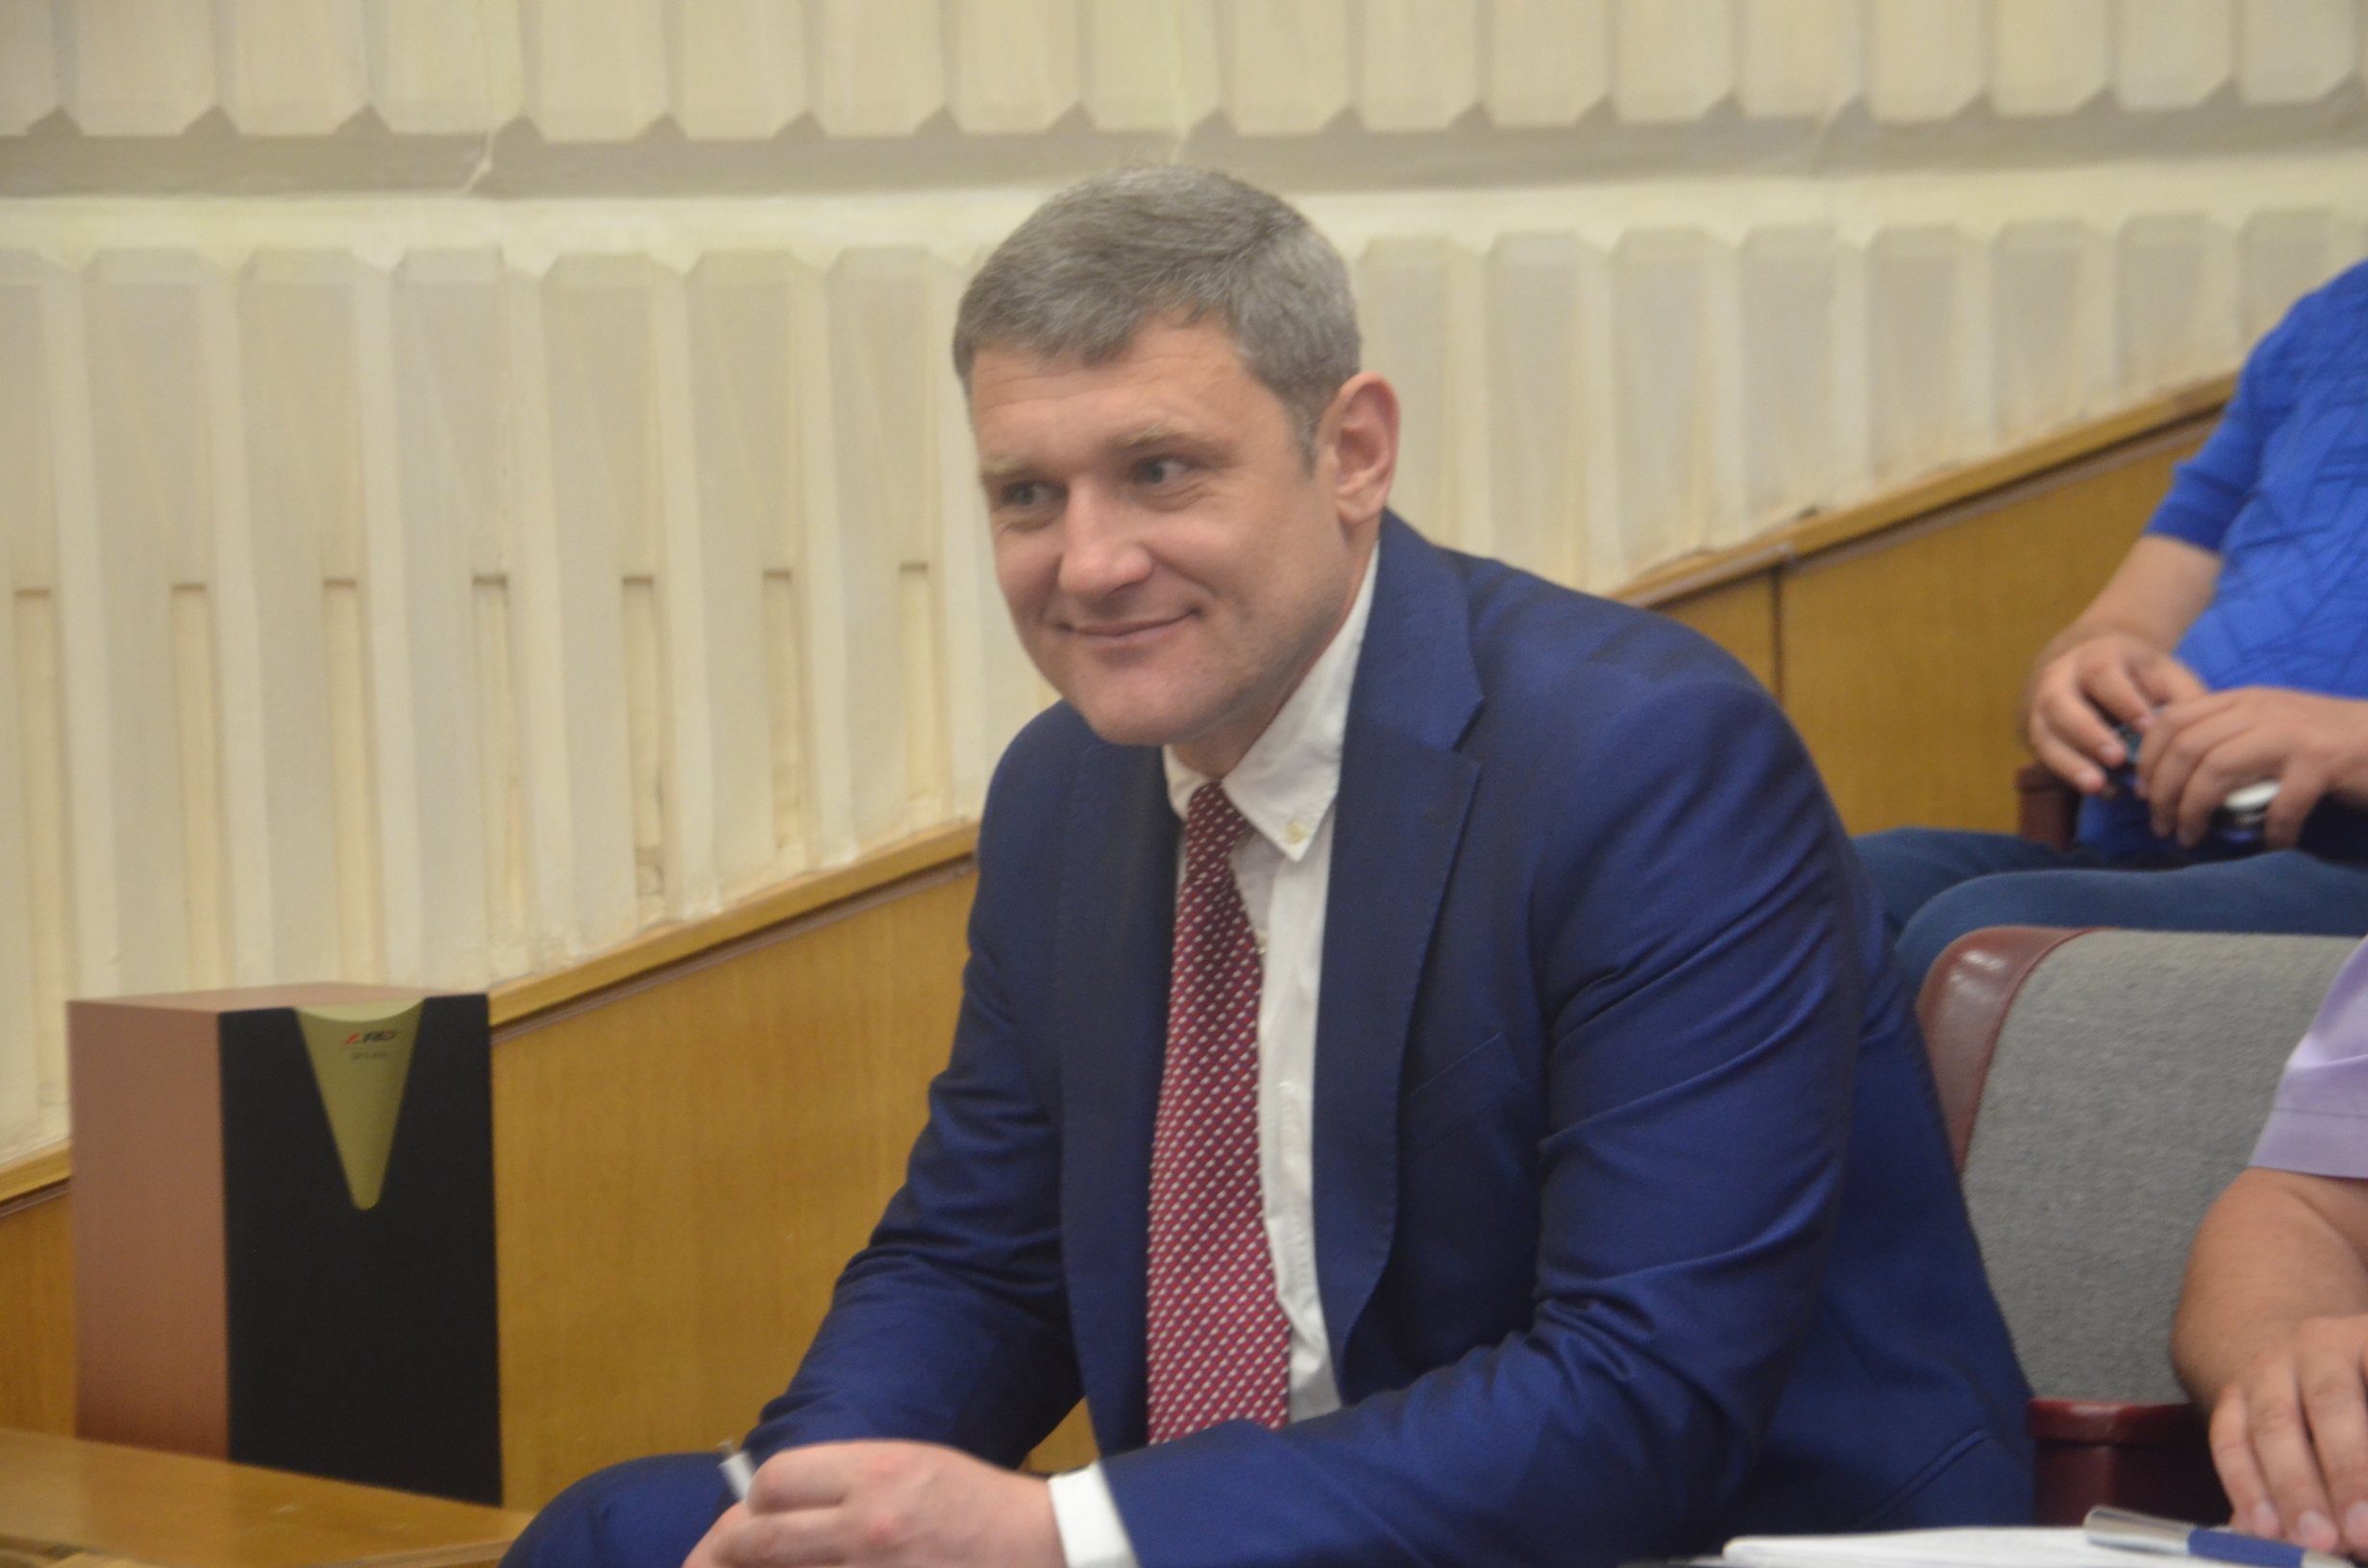 Кличко уволил директора “Житнего рынка” и назначил его руководителем Департамента промышленности и развития предпринимательства КГГА